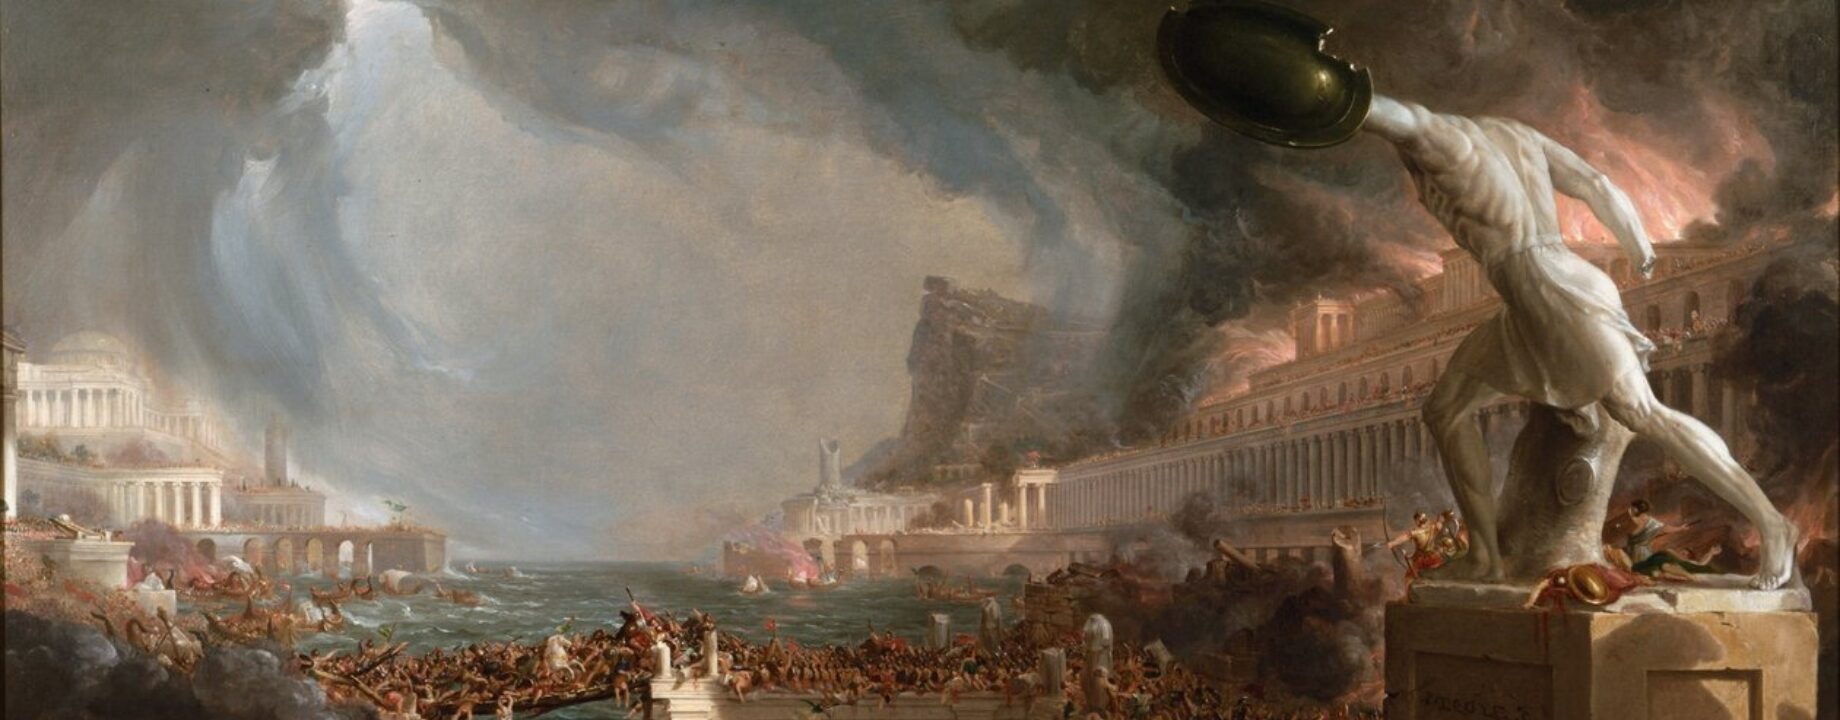 Thomas Cole Sac de Rome 455 Le Destin des empires Destruction par Thomas Cole 1836 Meister Drucke 1051290